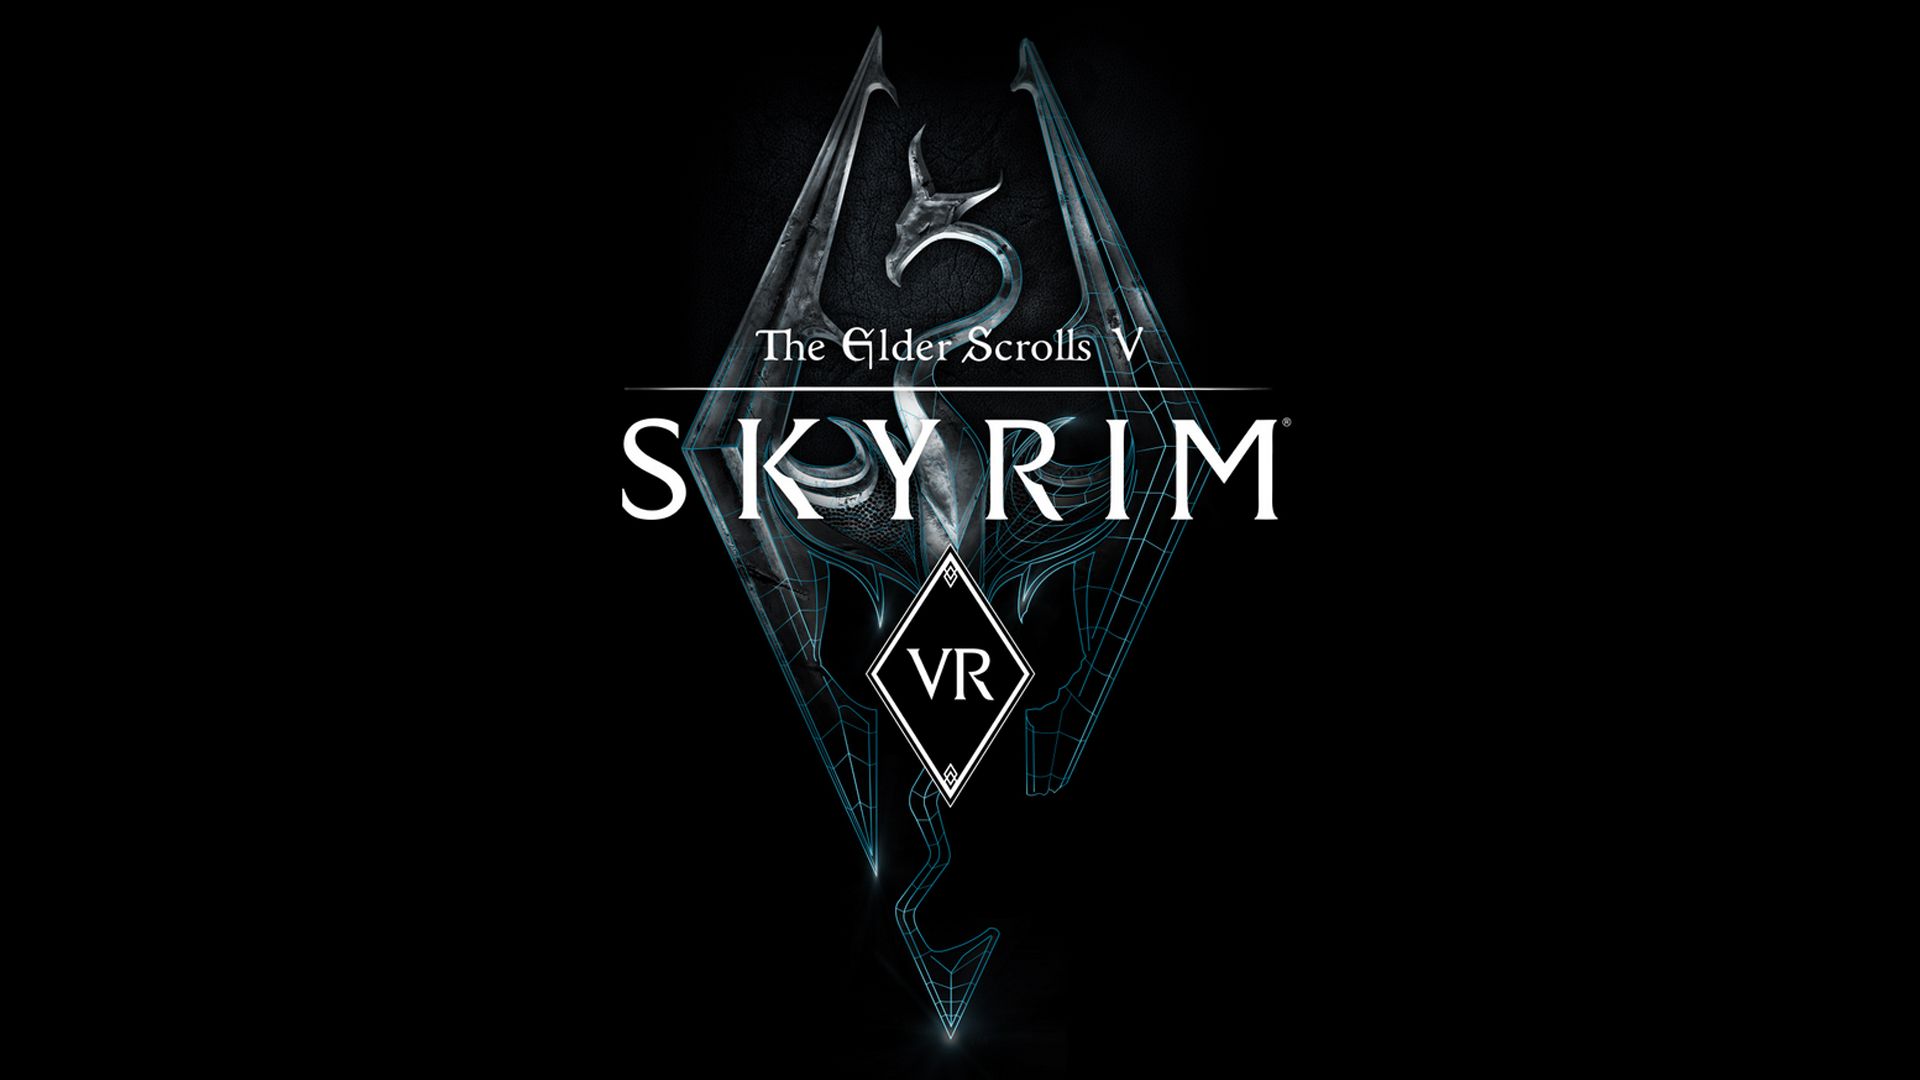 مراجعة لعبة the Elder Scrolls V: Skyrim VR